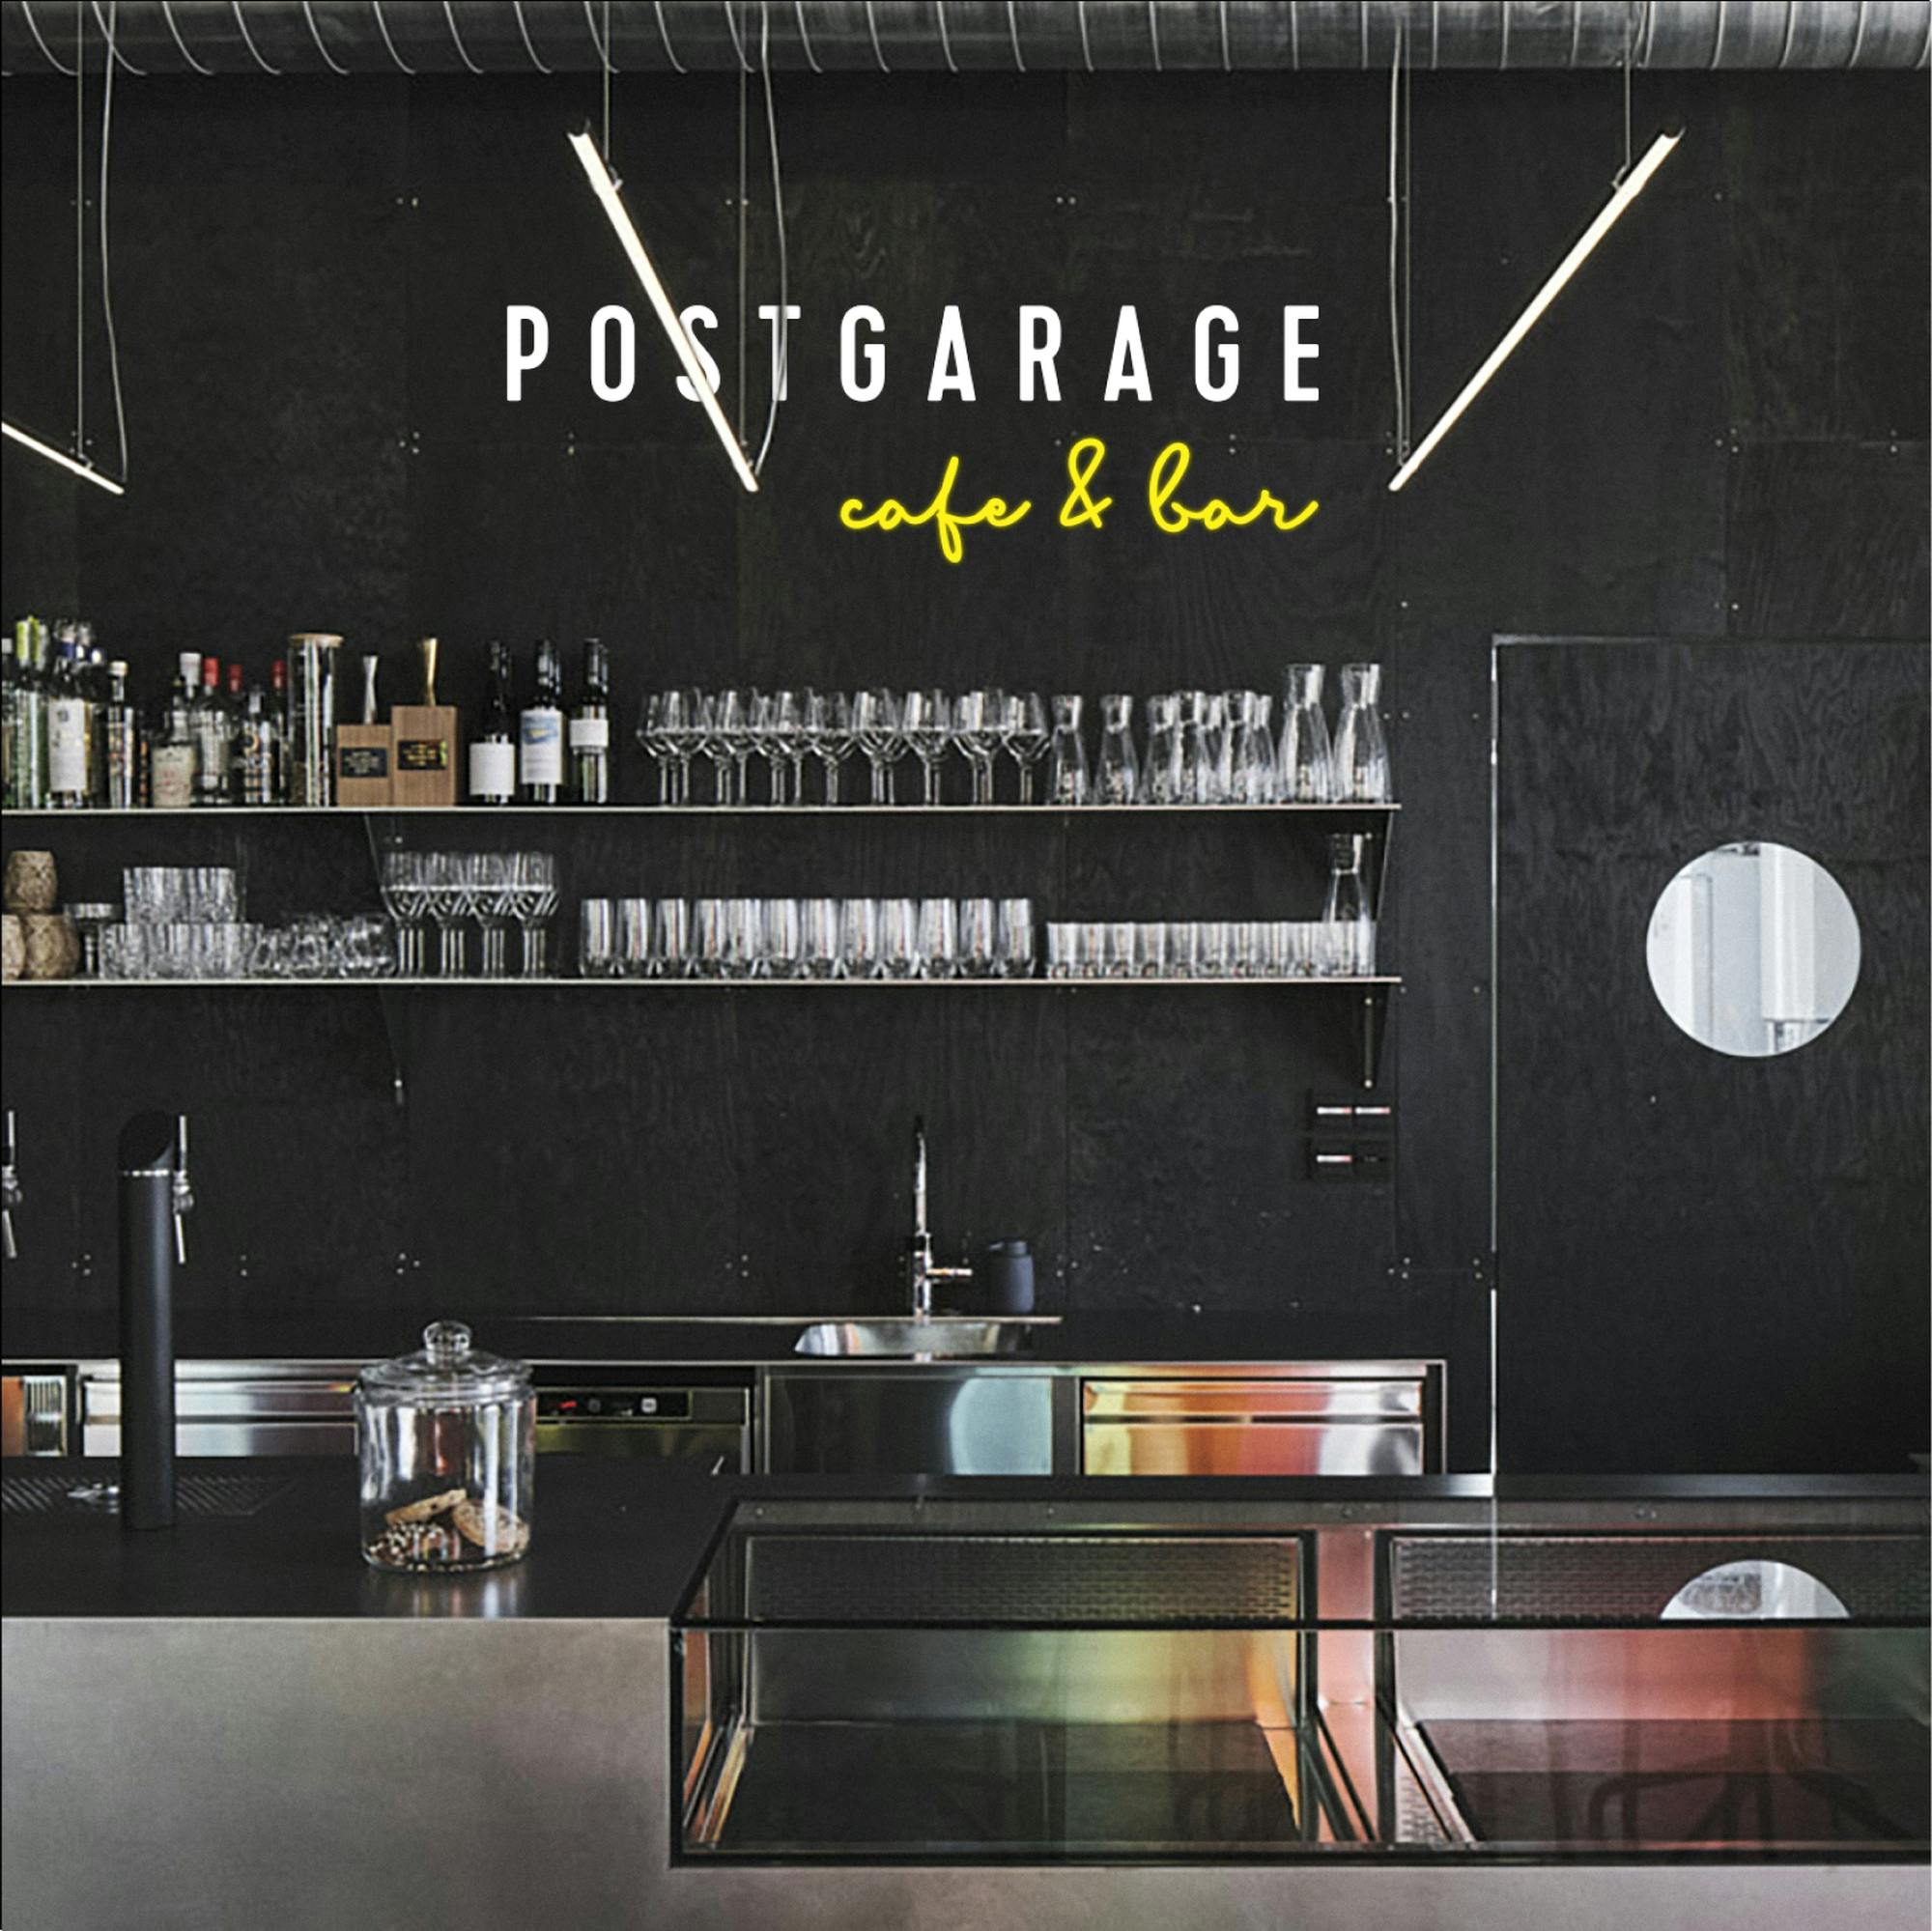 Bild der Postgarage cafe&bar Theke mit Logo © gm gobiq